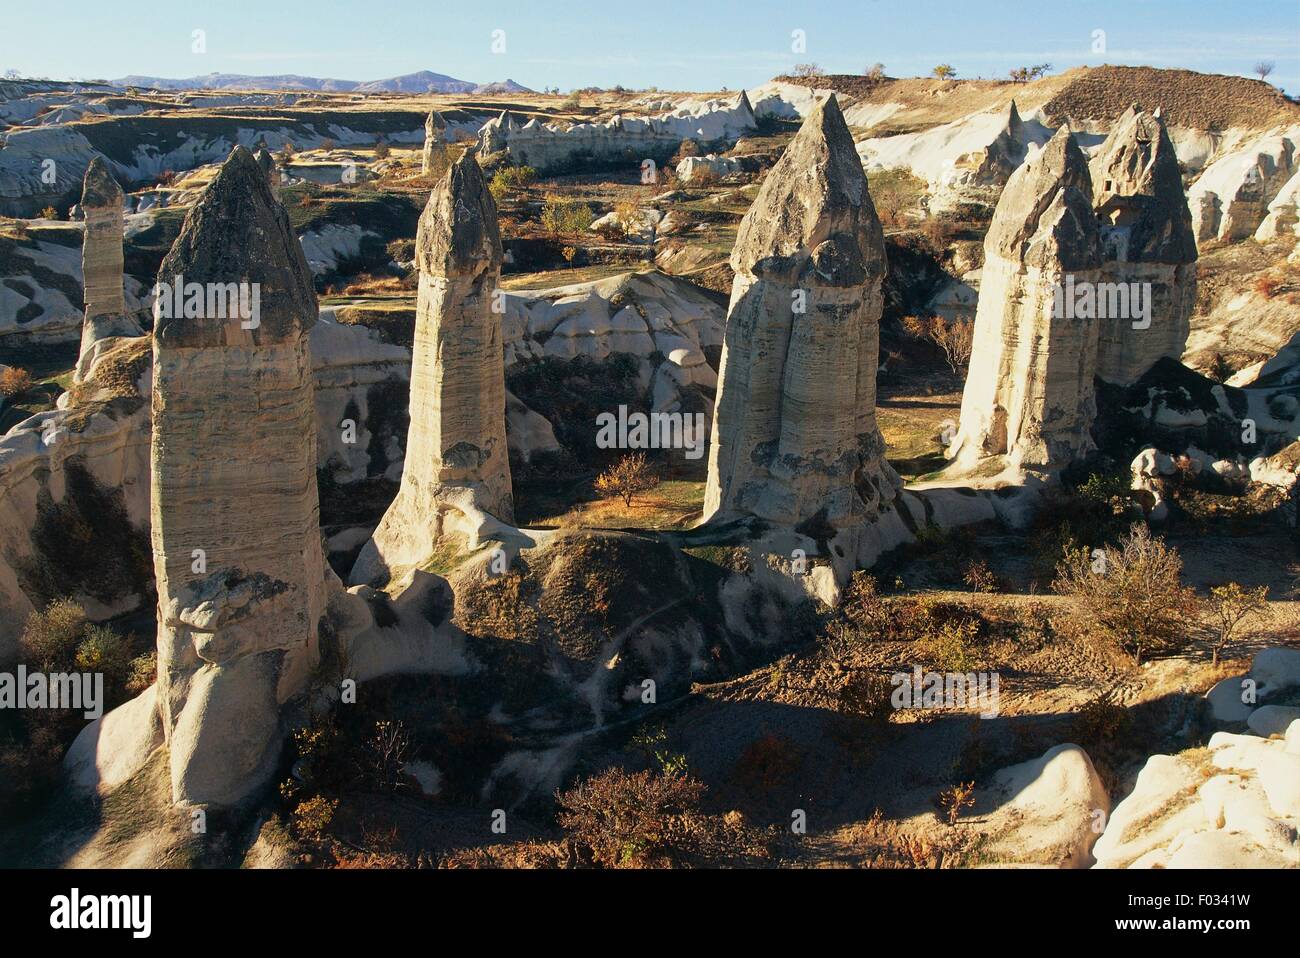 Vue aérienne de formations rocheuses appelées "cheminées de fées" dans la vallée de Göreme (Liste du patrimoine mondial de l'UNESCO, 1985) - Cappadoce, Turquie Banque D'Images